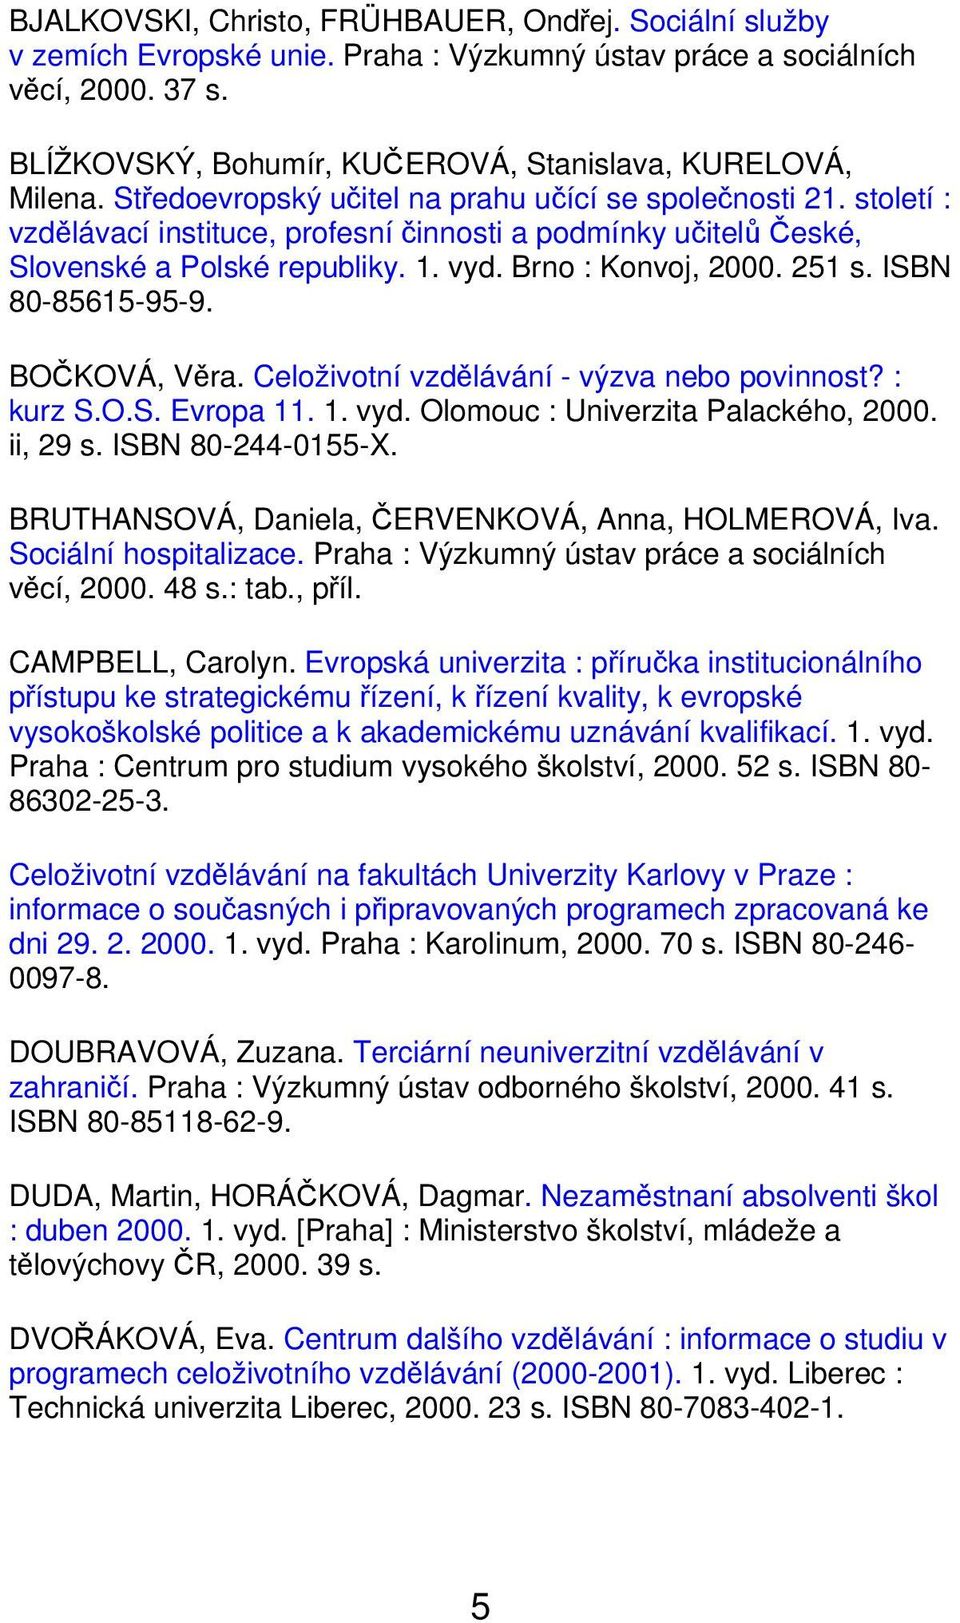 ISBN 80-85615-95-9. BOČKOVÁ, Věra. Celoživotní vzdělávání - výzva nebo povinnost? : kurz S.O.S. Evropa 11. 1. vyd. Olomouc : Univerzita Palackého, 2000. ii, 29 s. ISBN 80-244-0155-X.